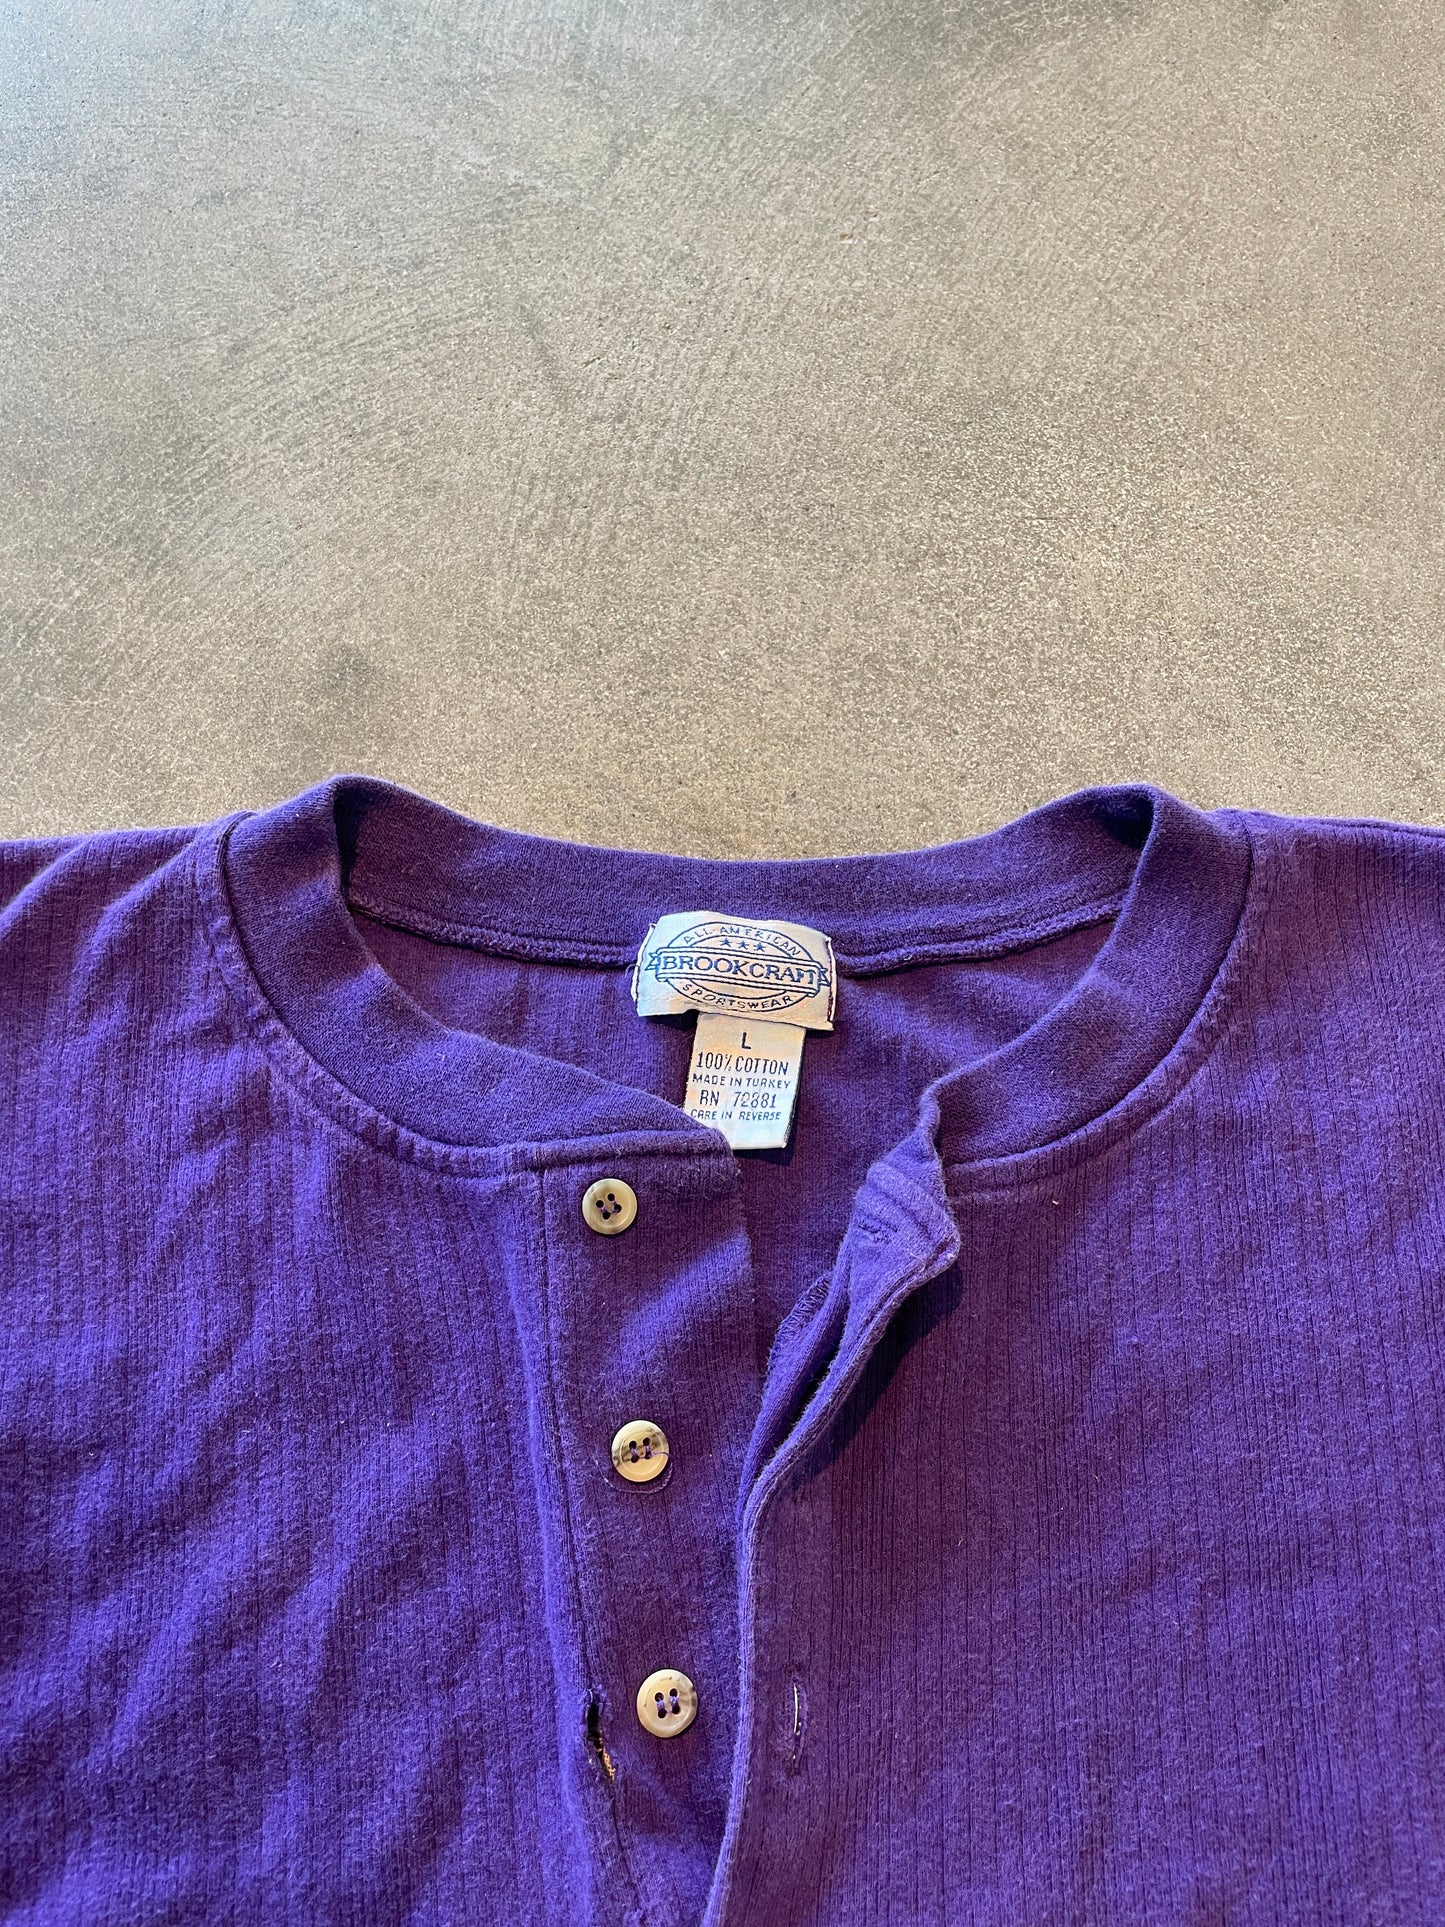 Purple button up men's shirt - L